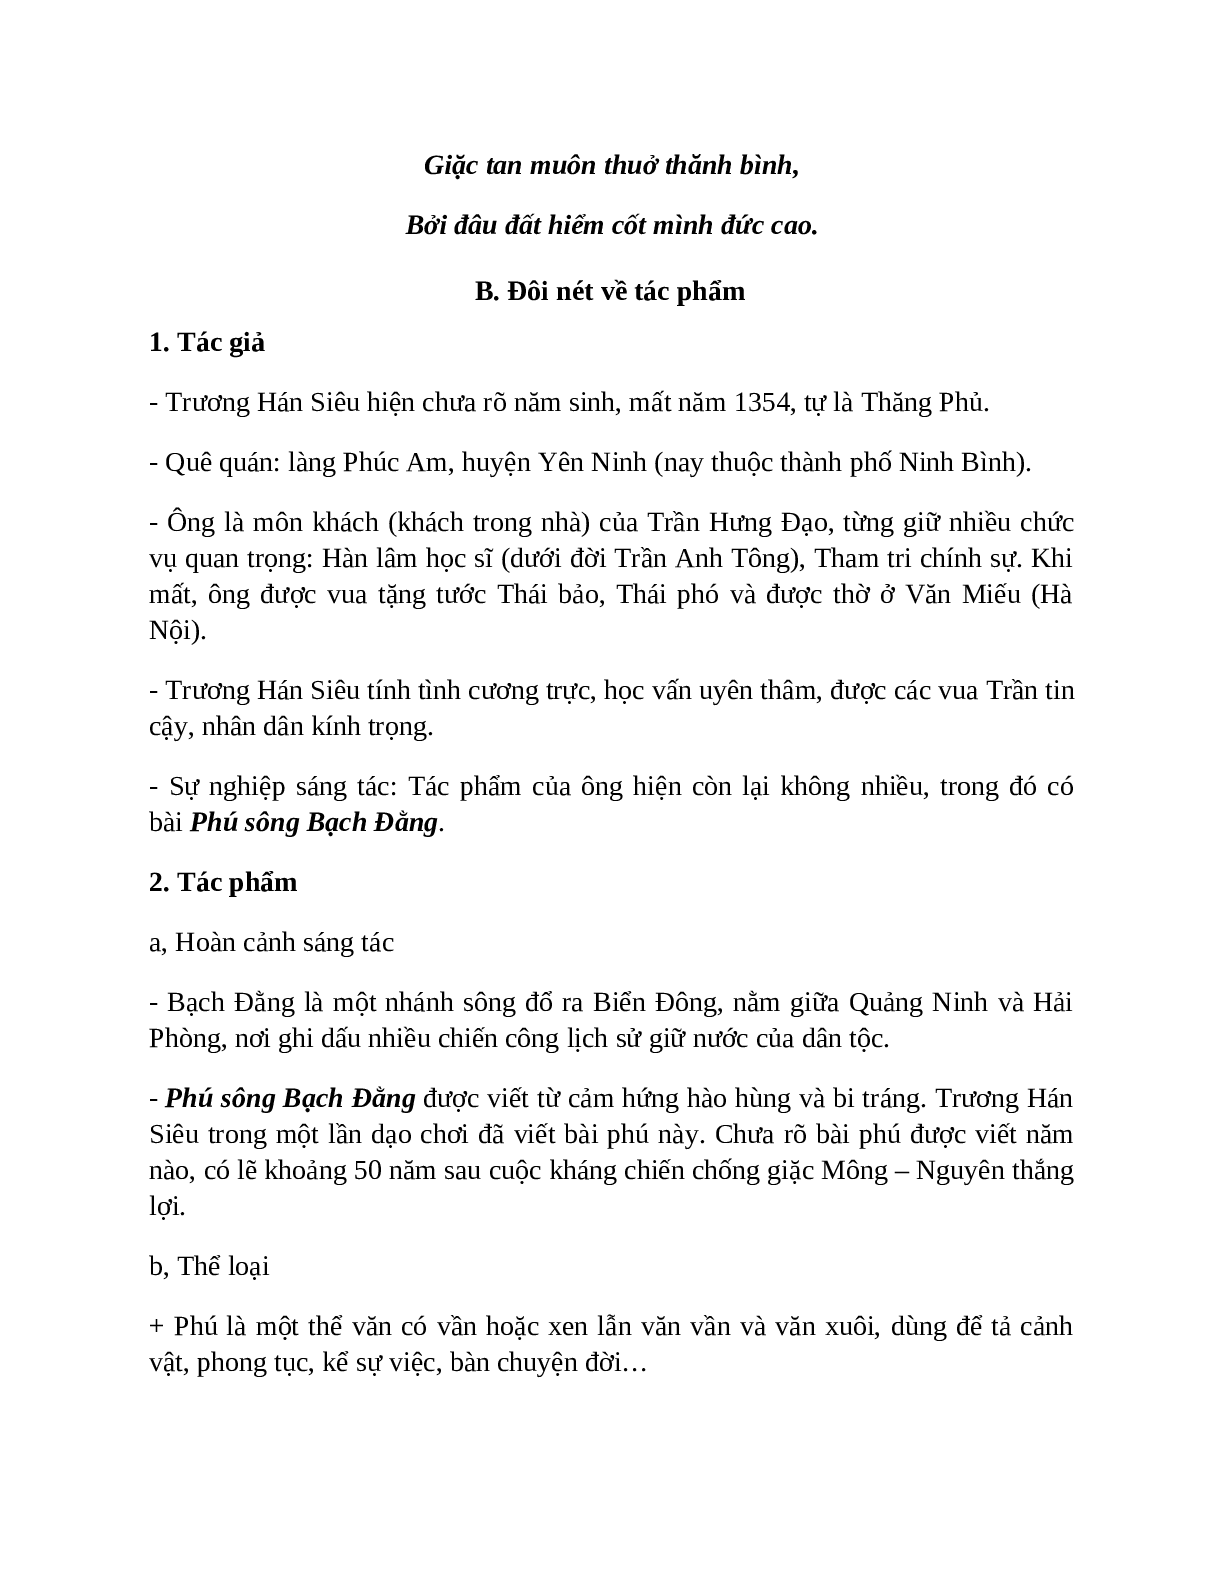 Phú sông Bạch Đằng - Tác giả tác phẩm – Ngữ văn lớp 10 (trang 4)